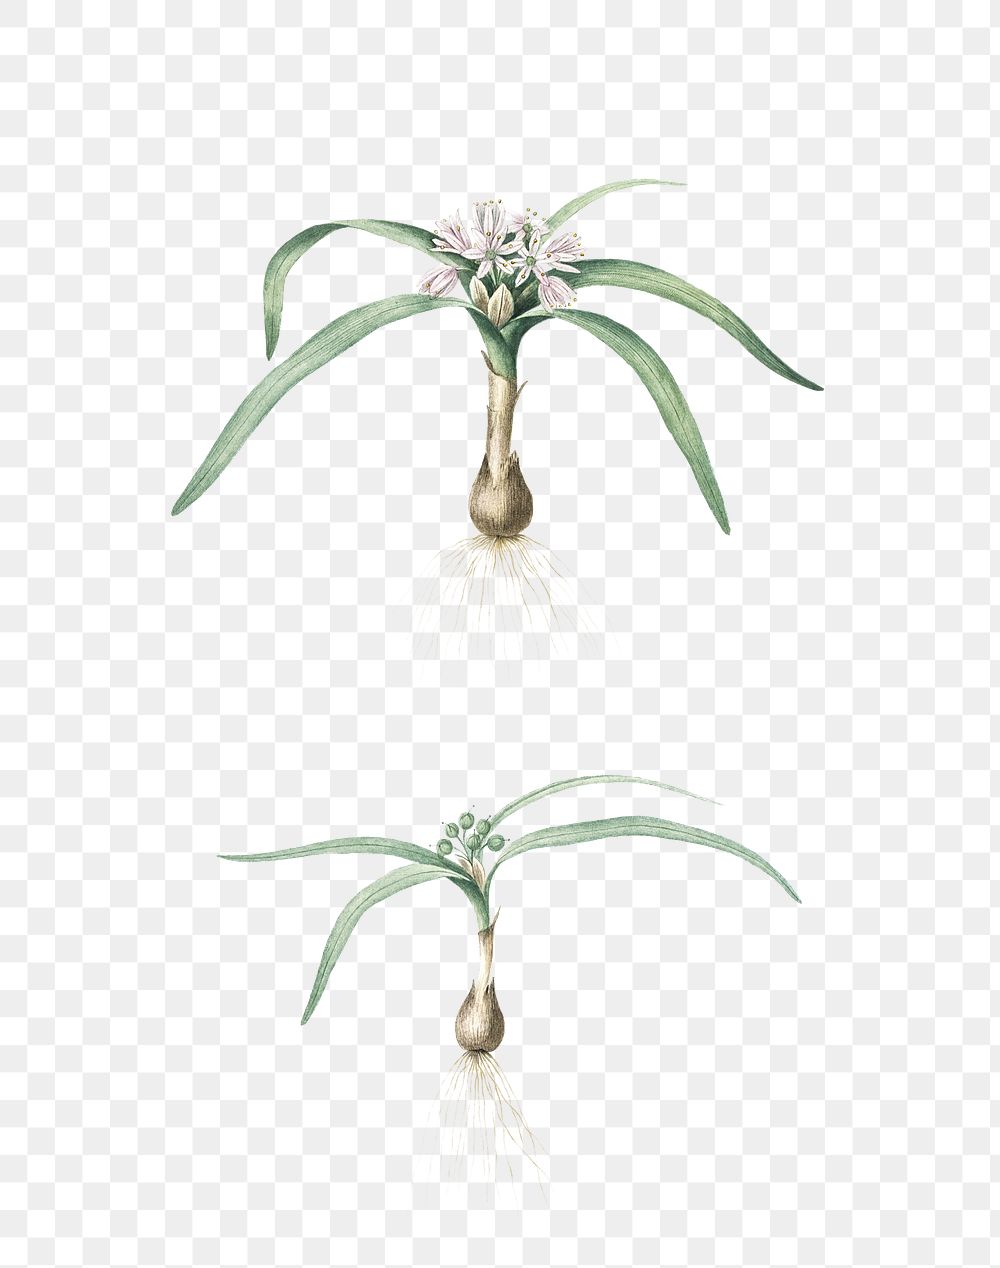 Dwarf garlic png sticker, vintage botanical illustration, transparent background